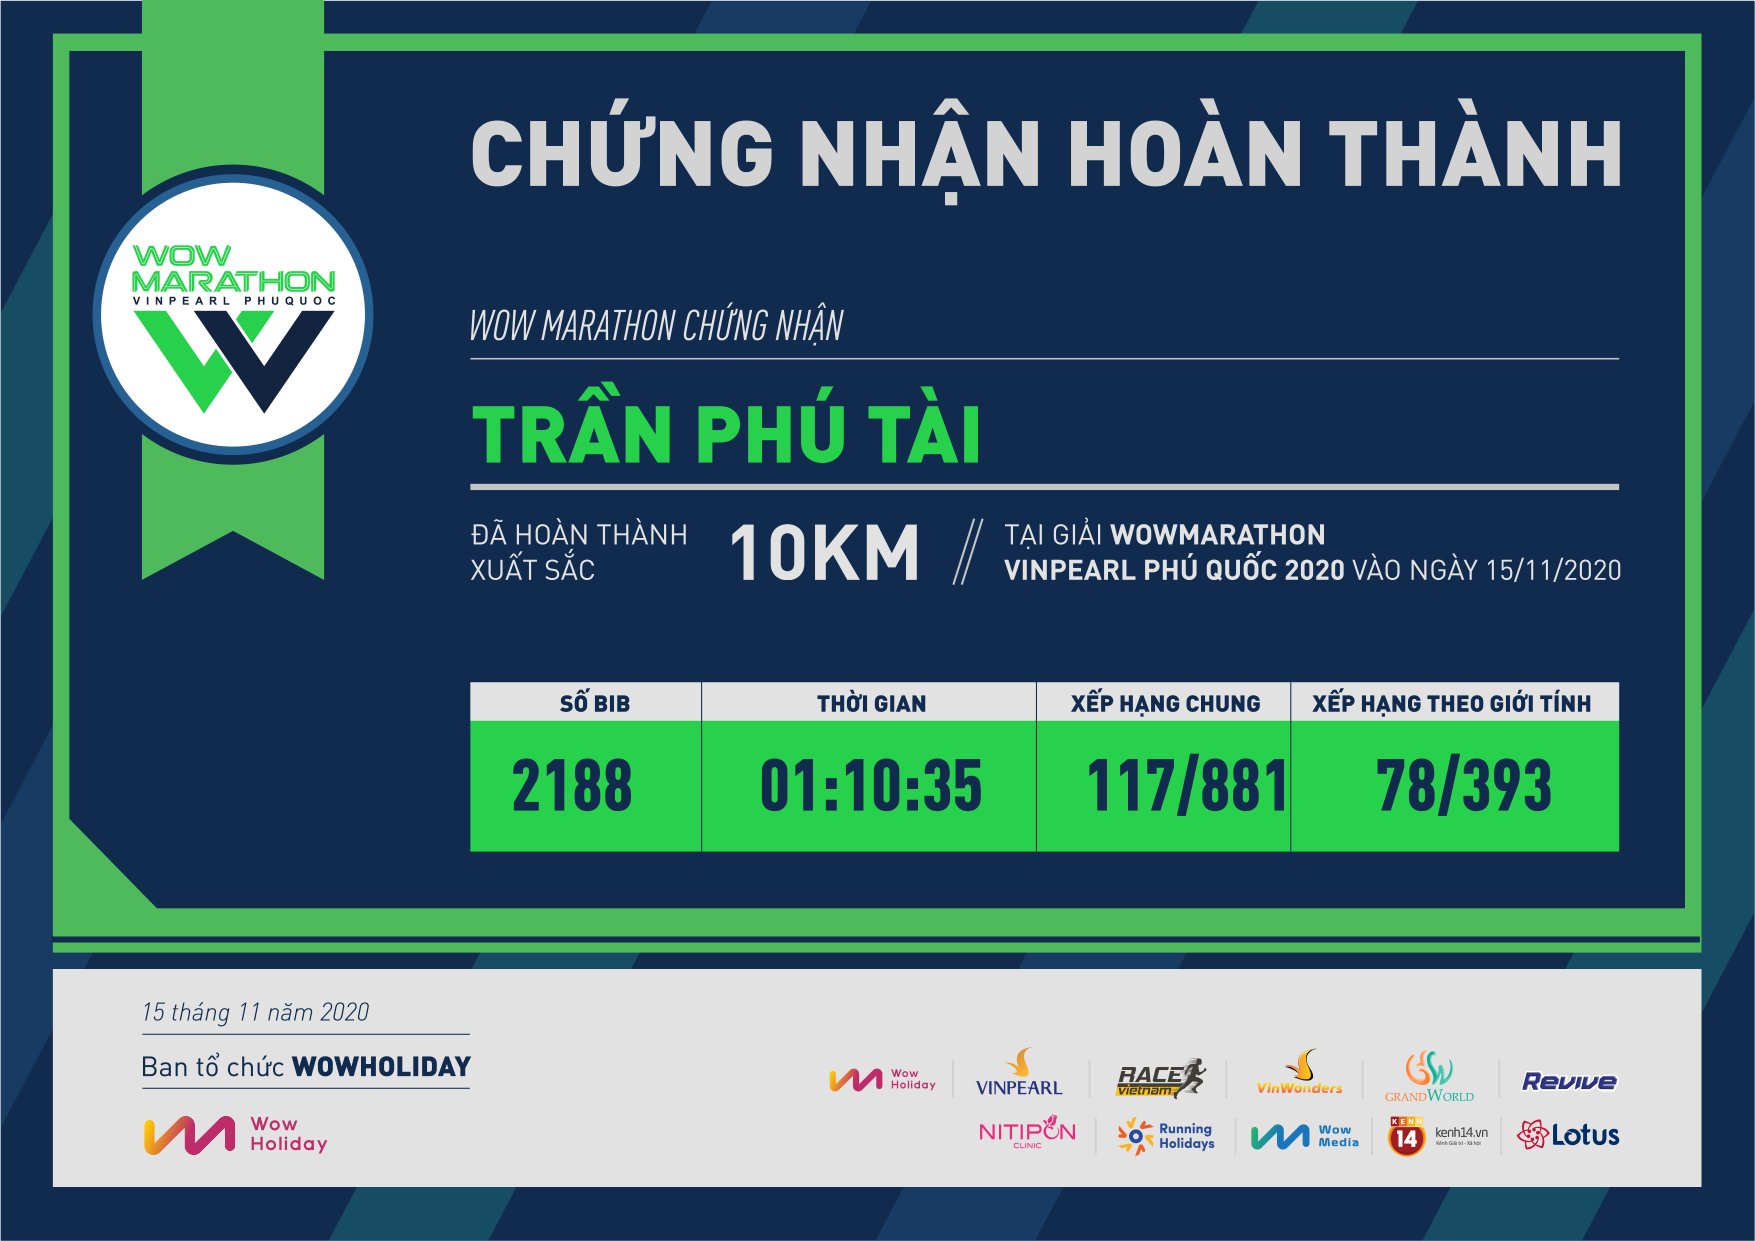 2188 - Trần Phú Tài